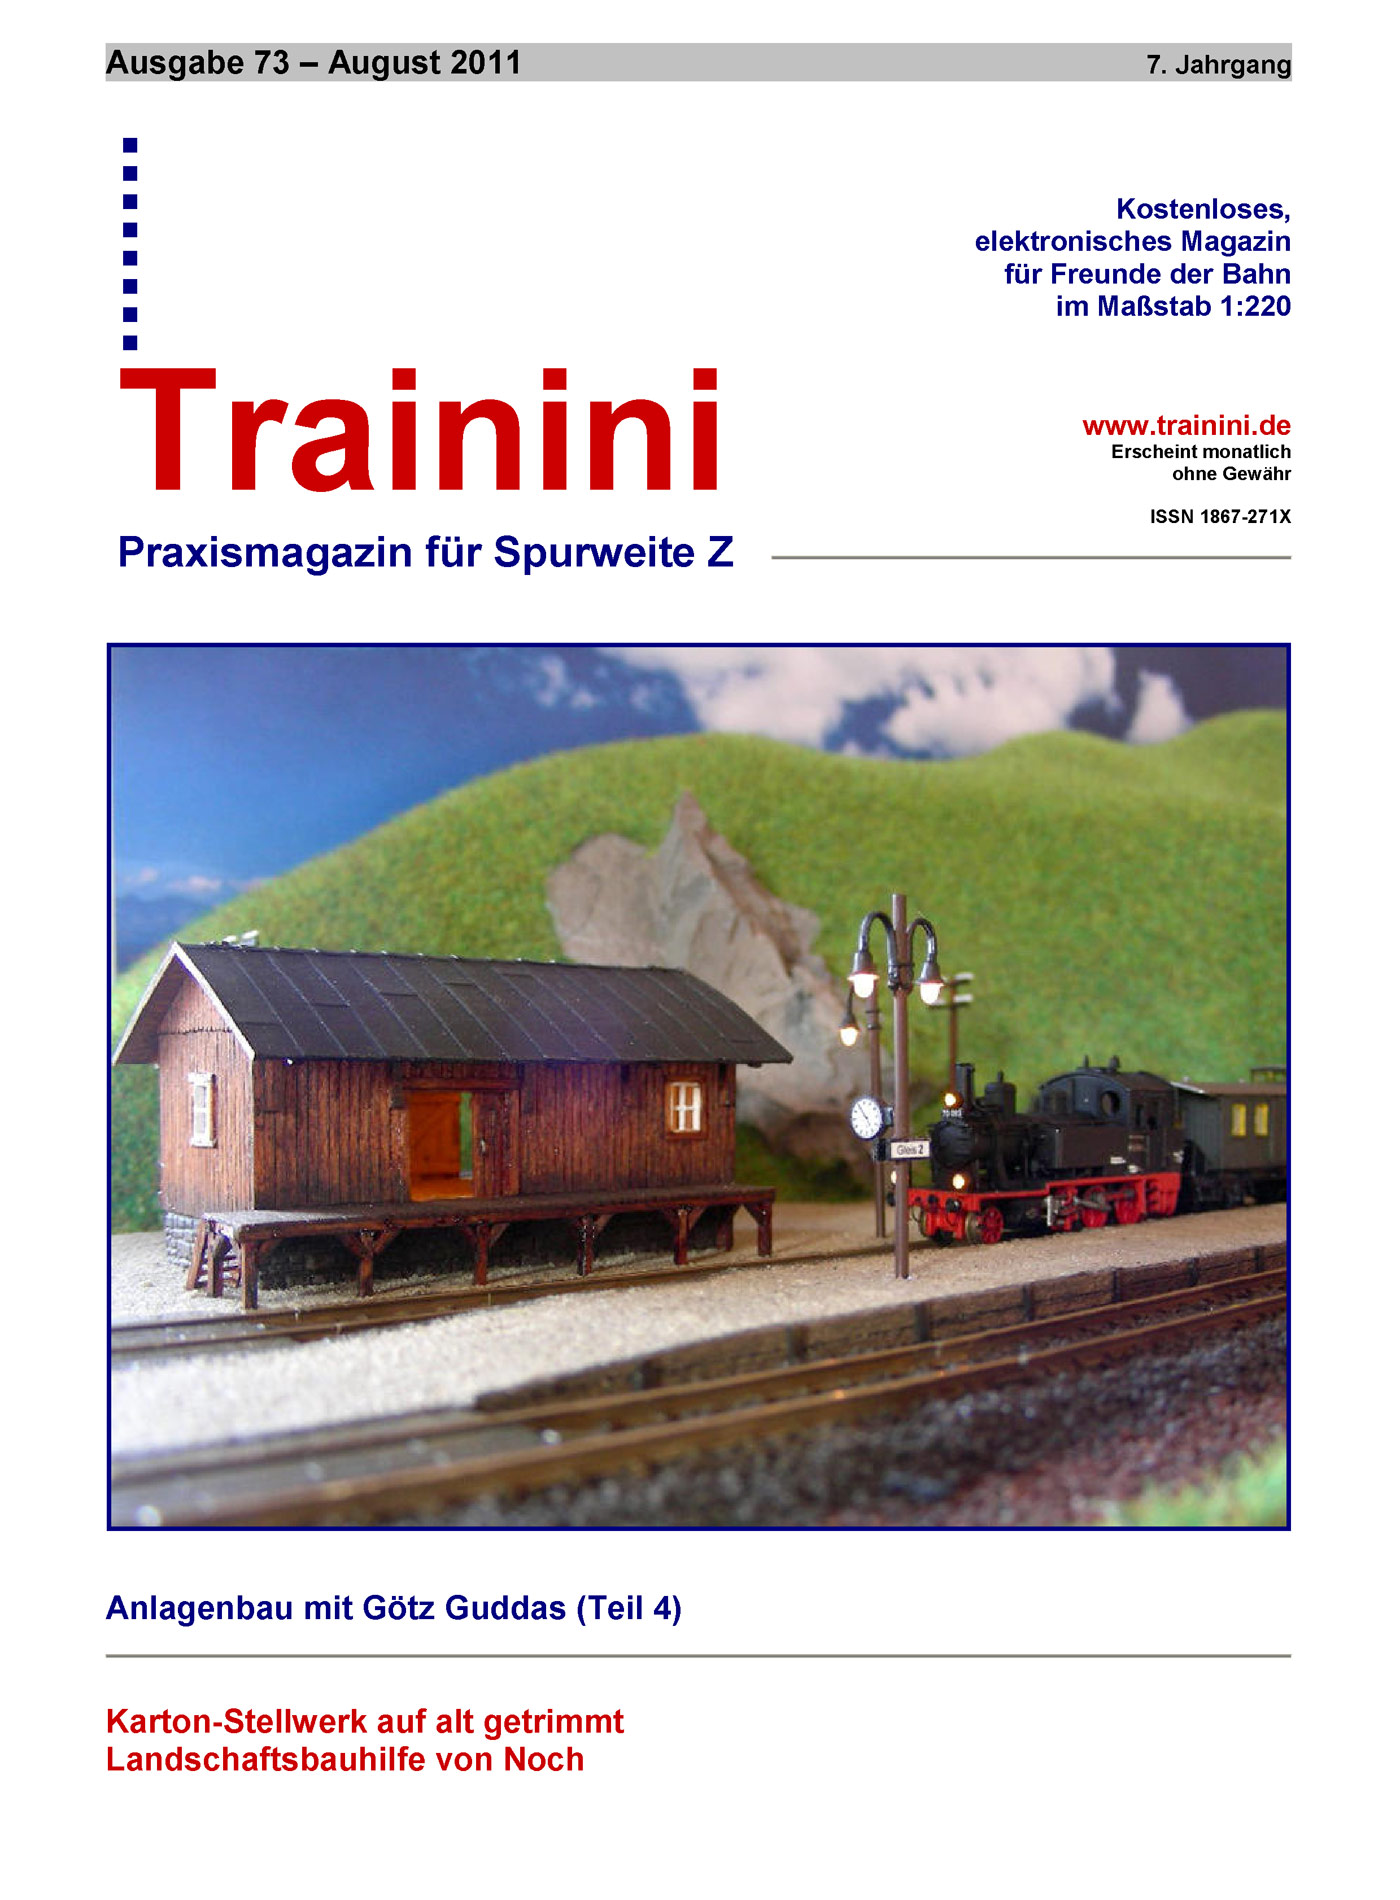 Trainini Ausgabe August 2011